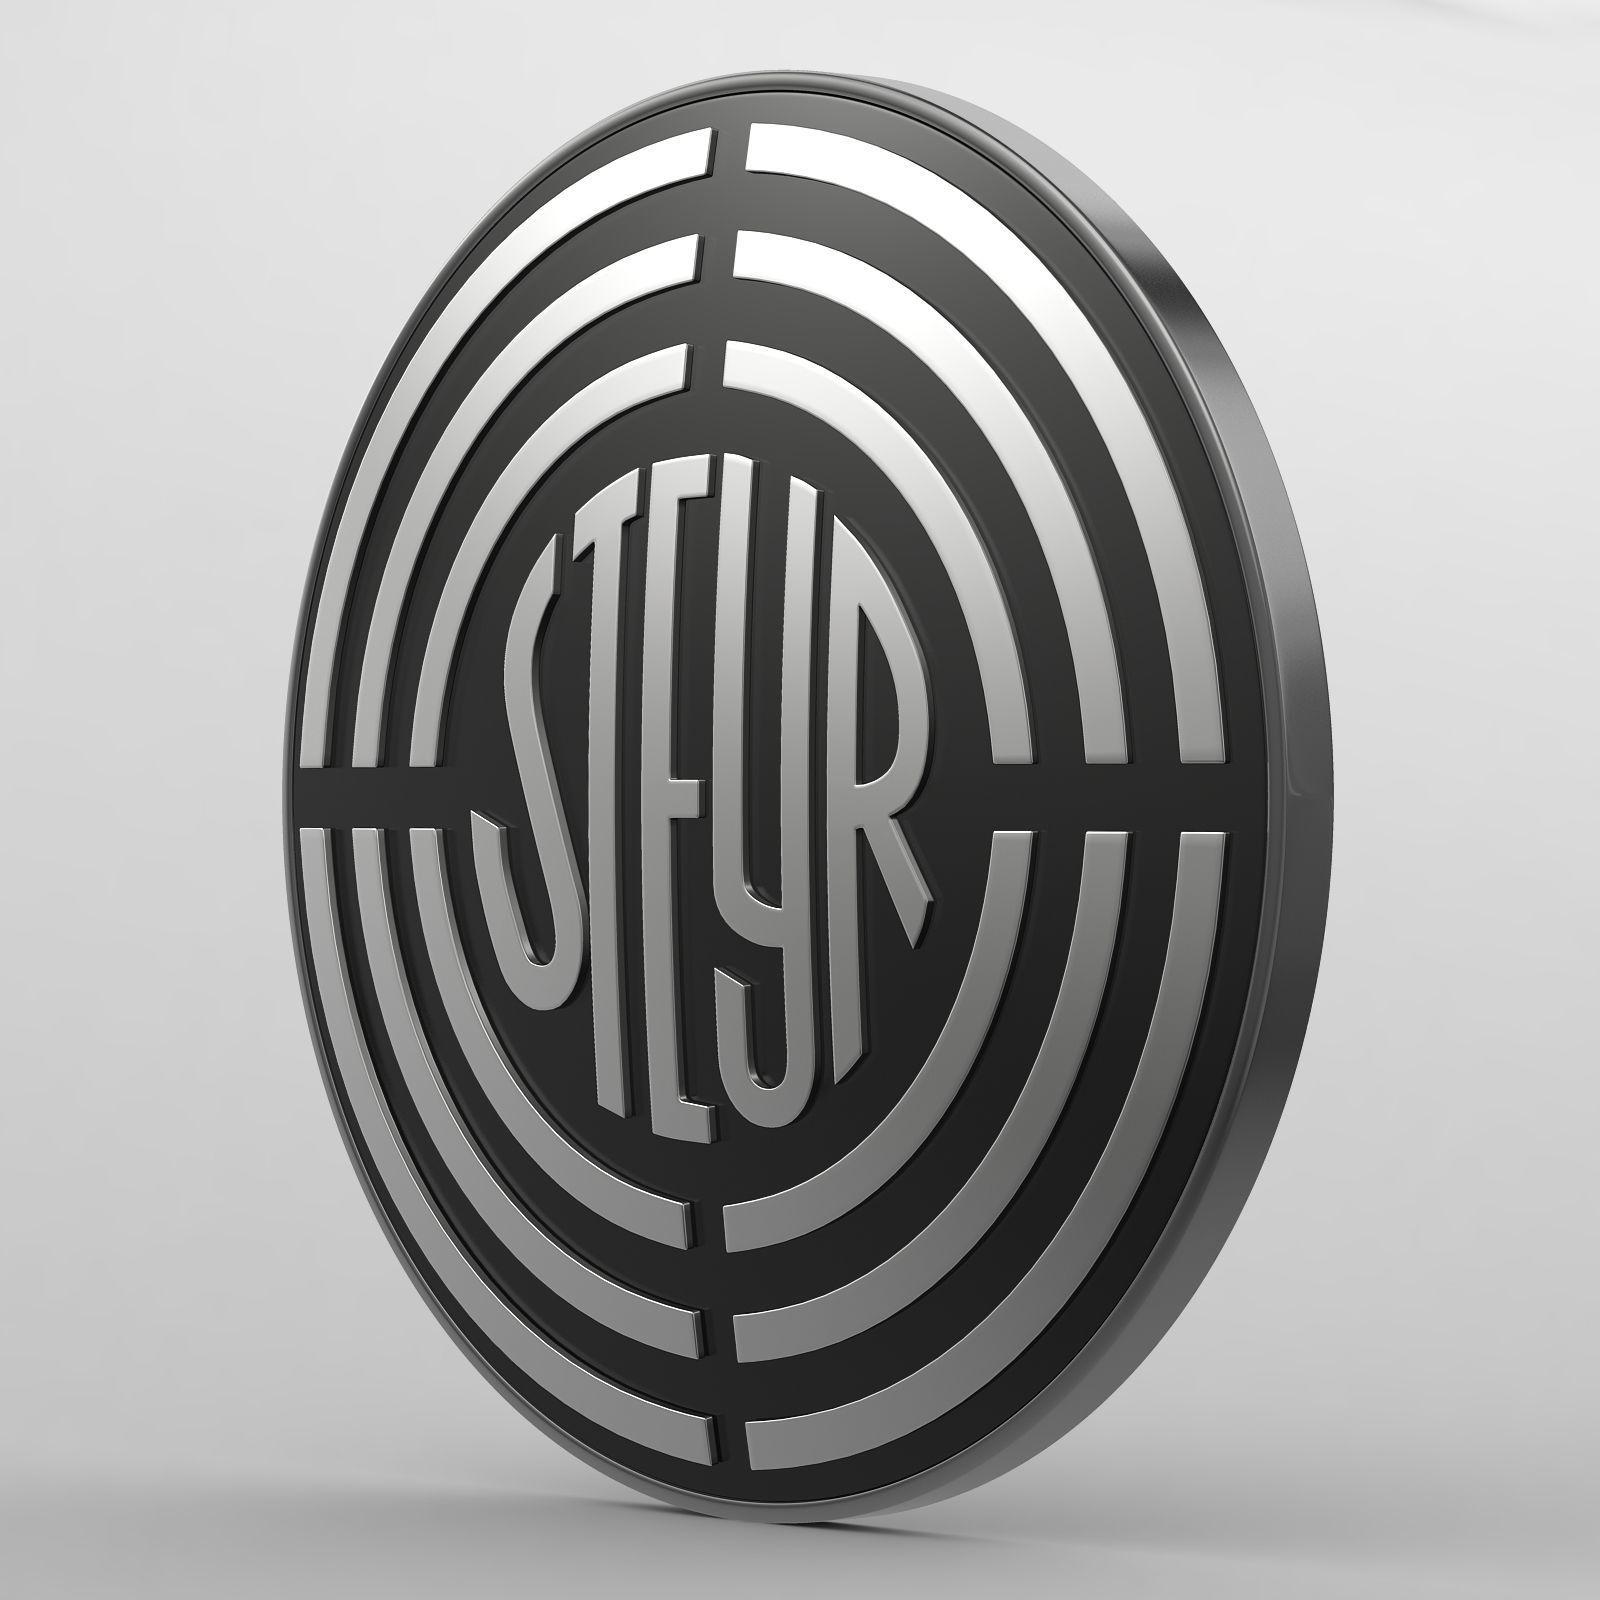 Steyr Logo - steyr logo | 3D model